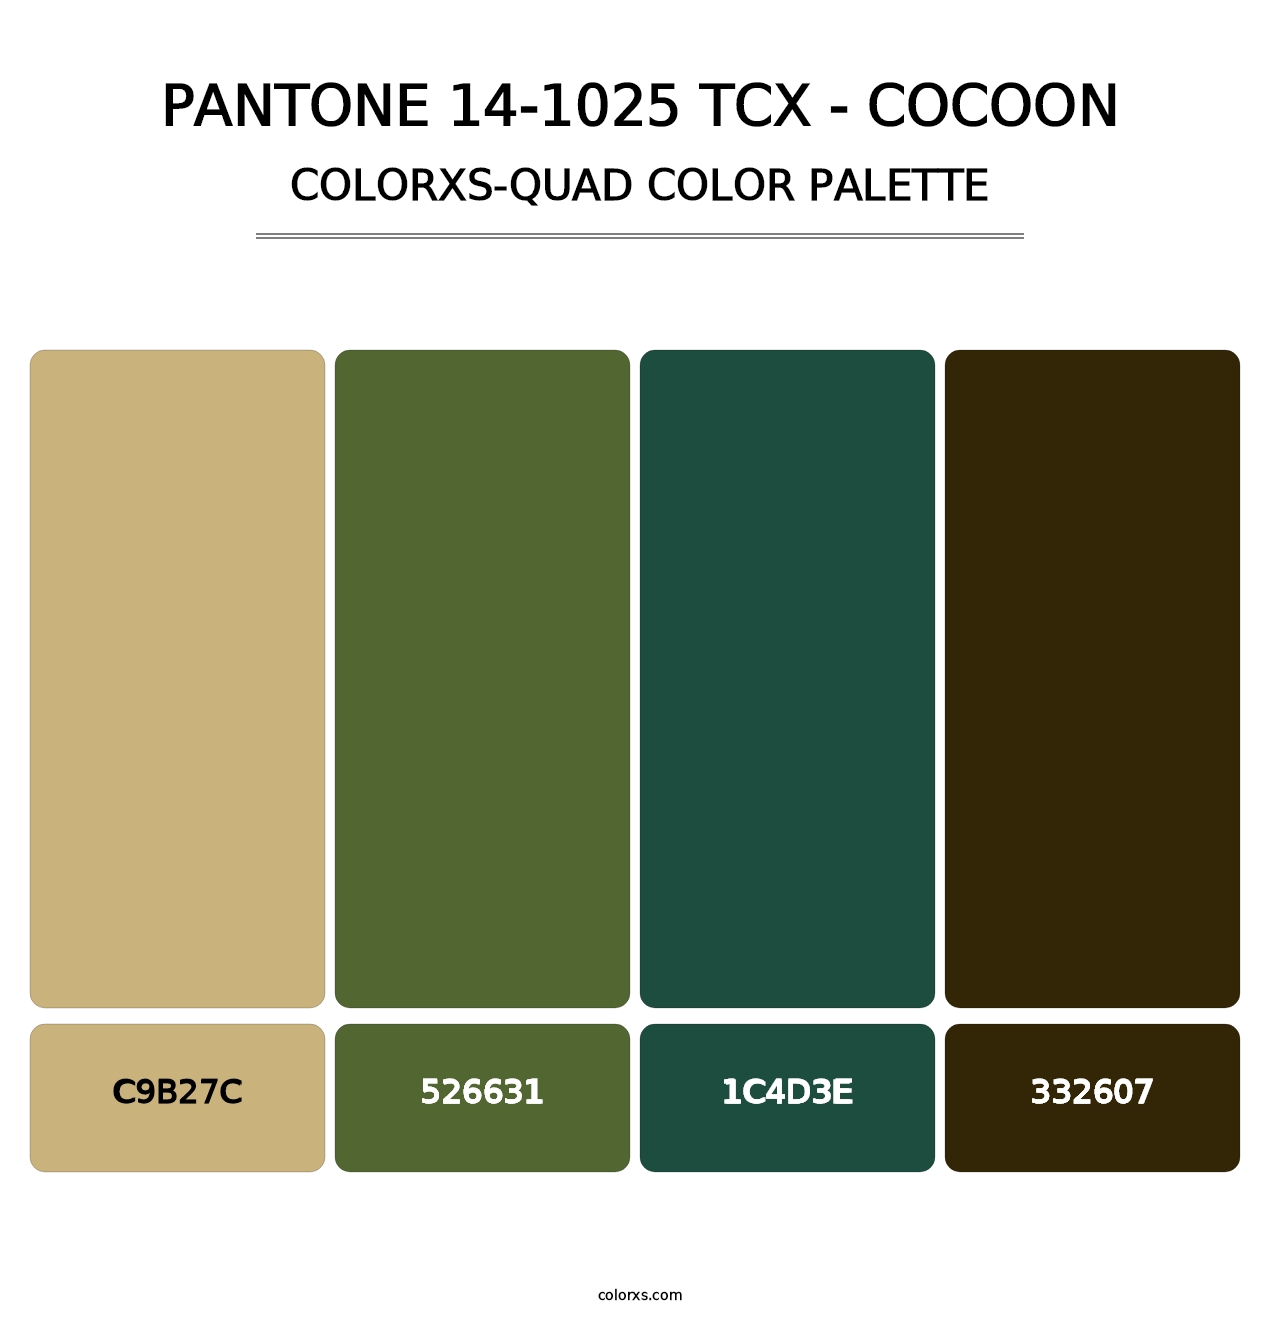 PANTONE 14-1025 TCX - Cocoon - Colorxs Quad Palette